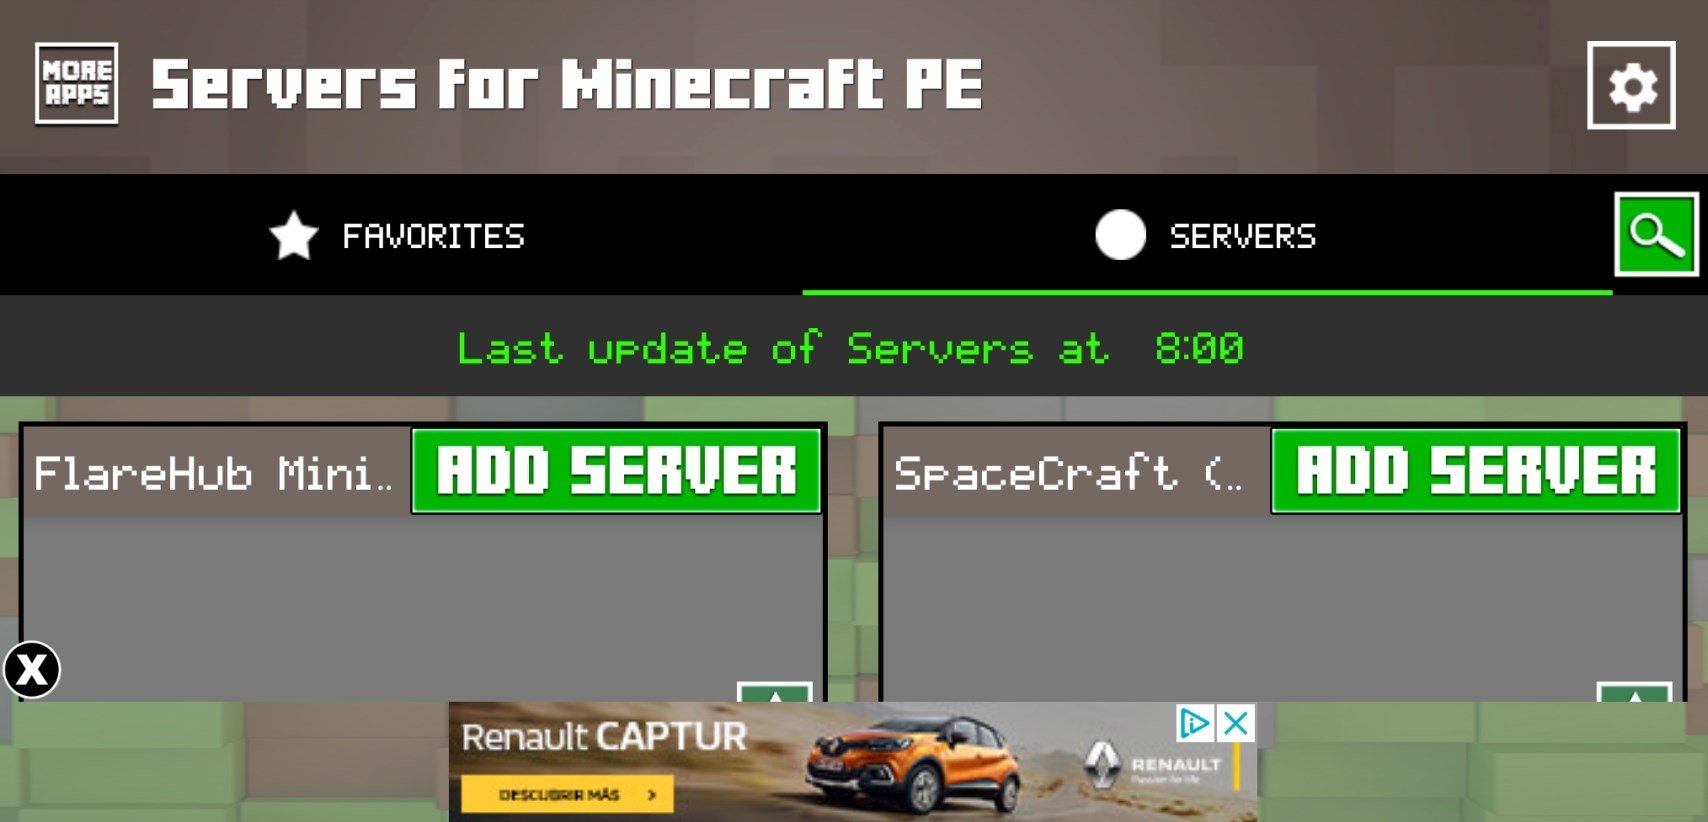 Servery Dlya Minecraft Pe 2 16 Android用ダウンロードapk無料